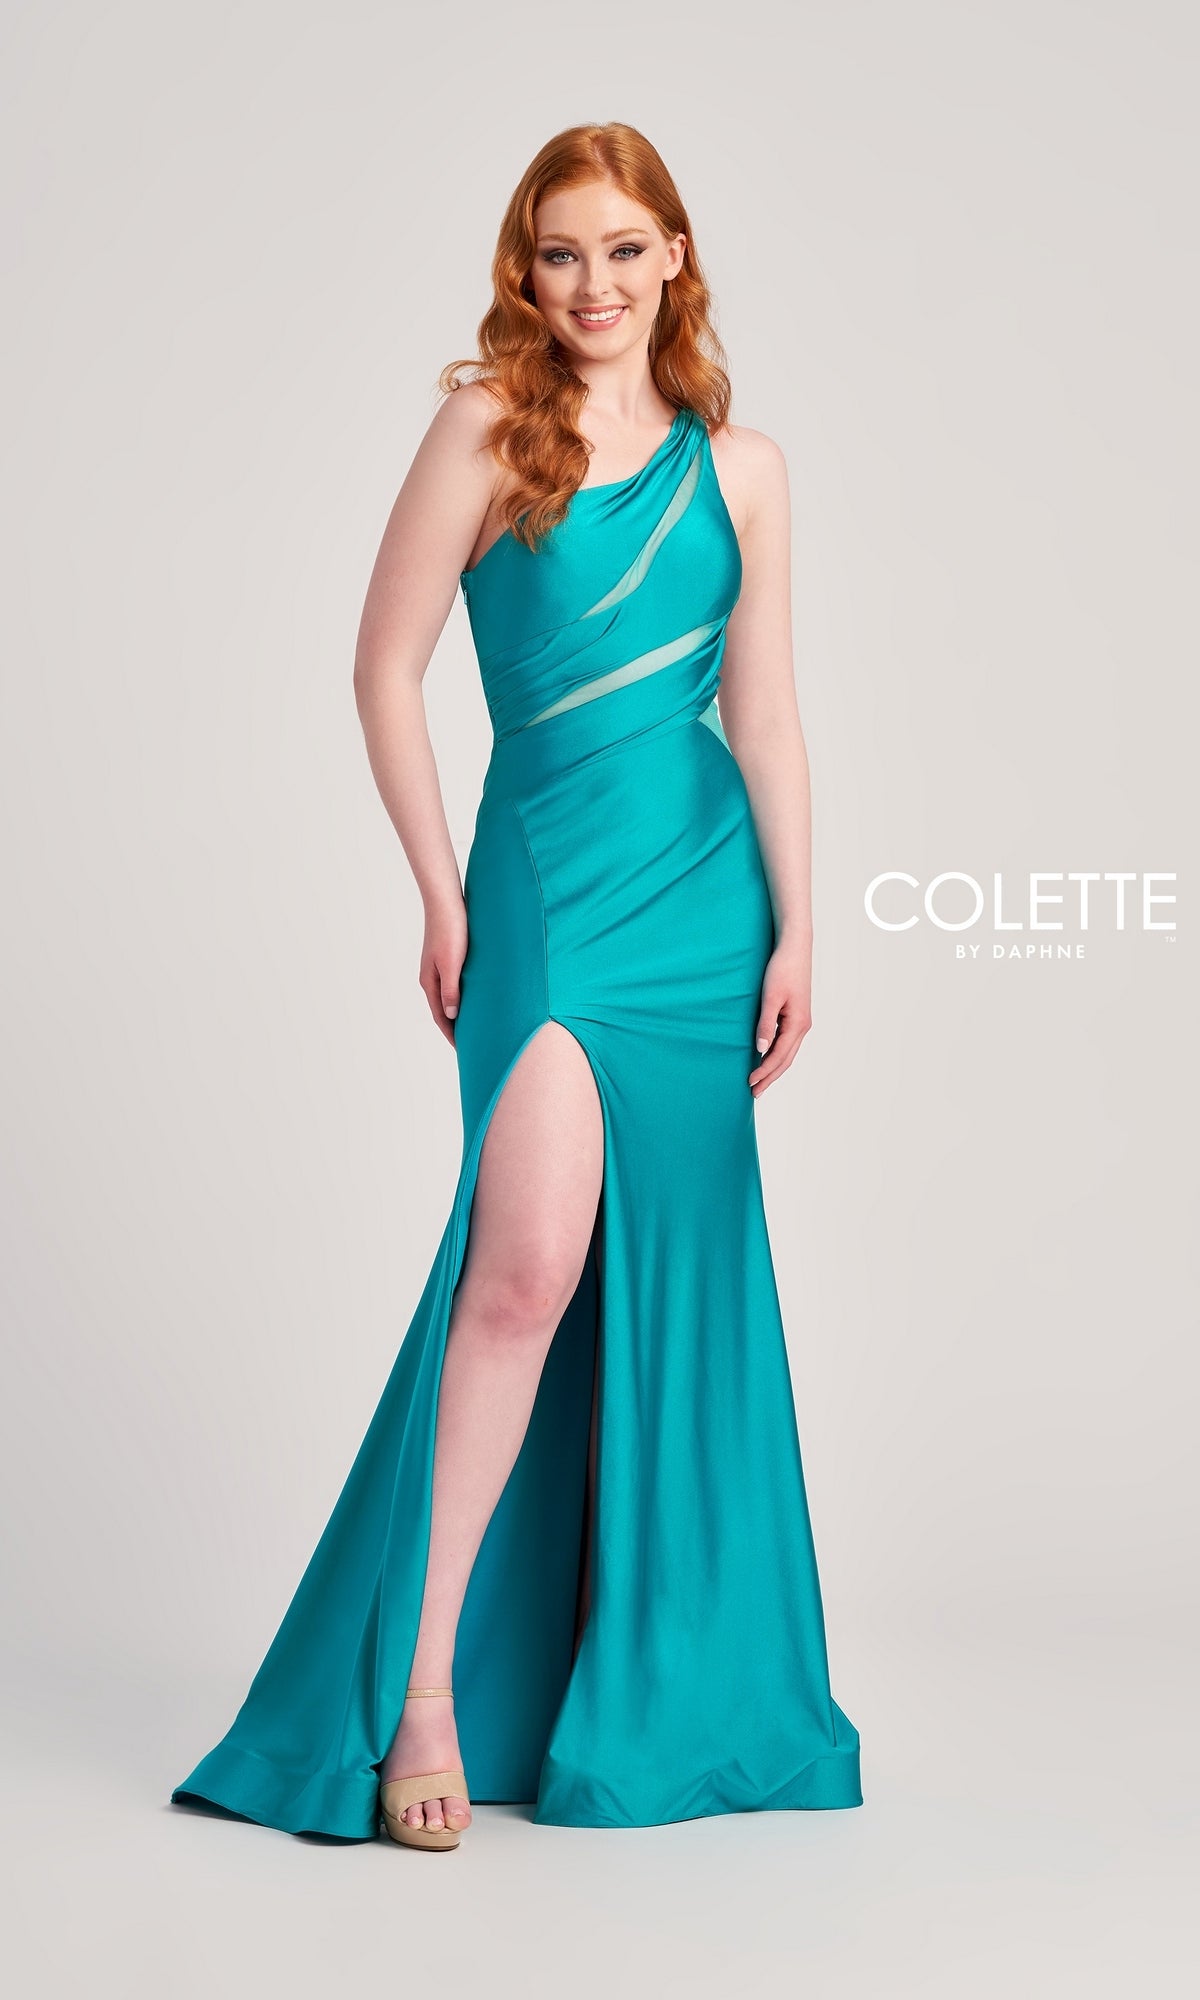 One-Shoulder Cut-Out Long Colette Prom Dress CL5207